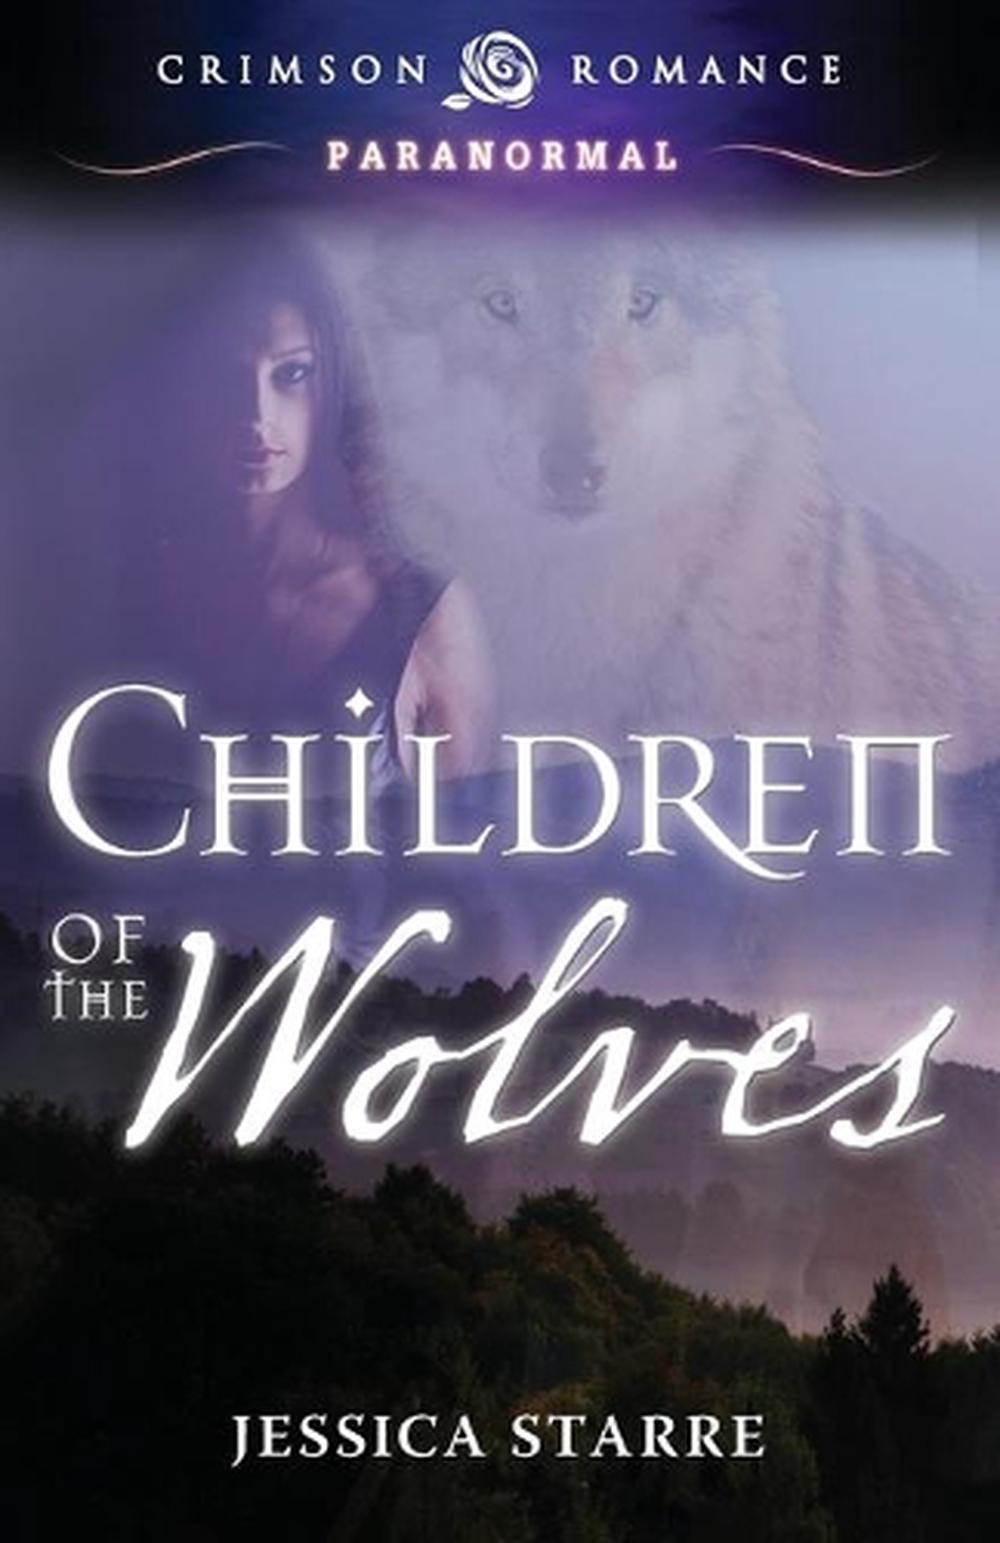 wolf children full movie english dub free